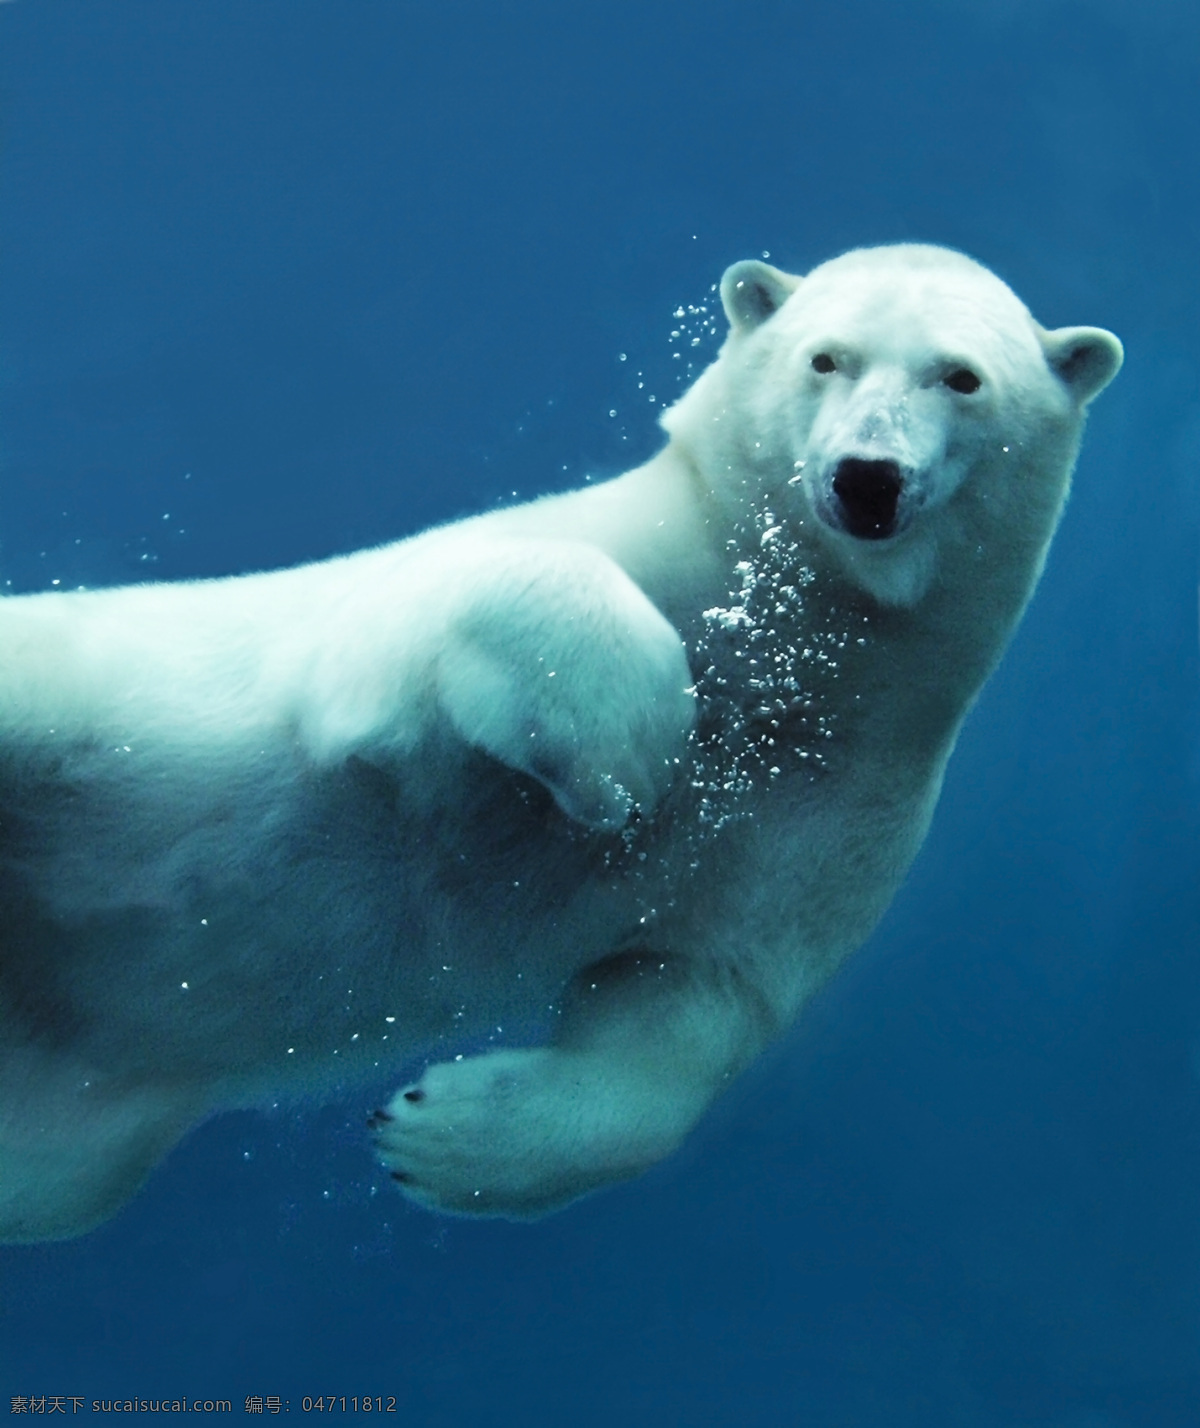 北极熊 小动物 动物 野生动物 可爱 保护动物 极地动物 生物世界